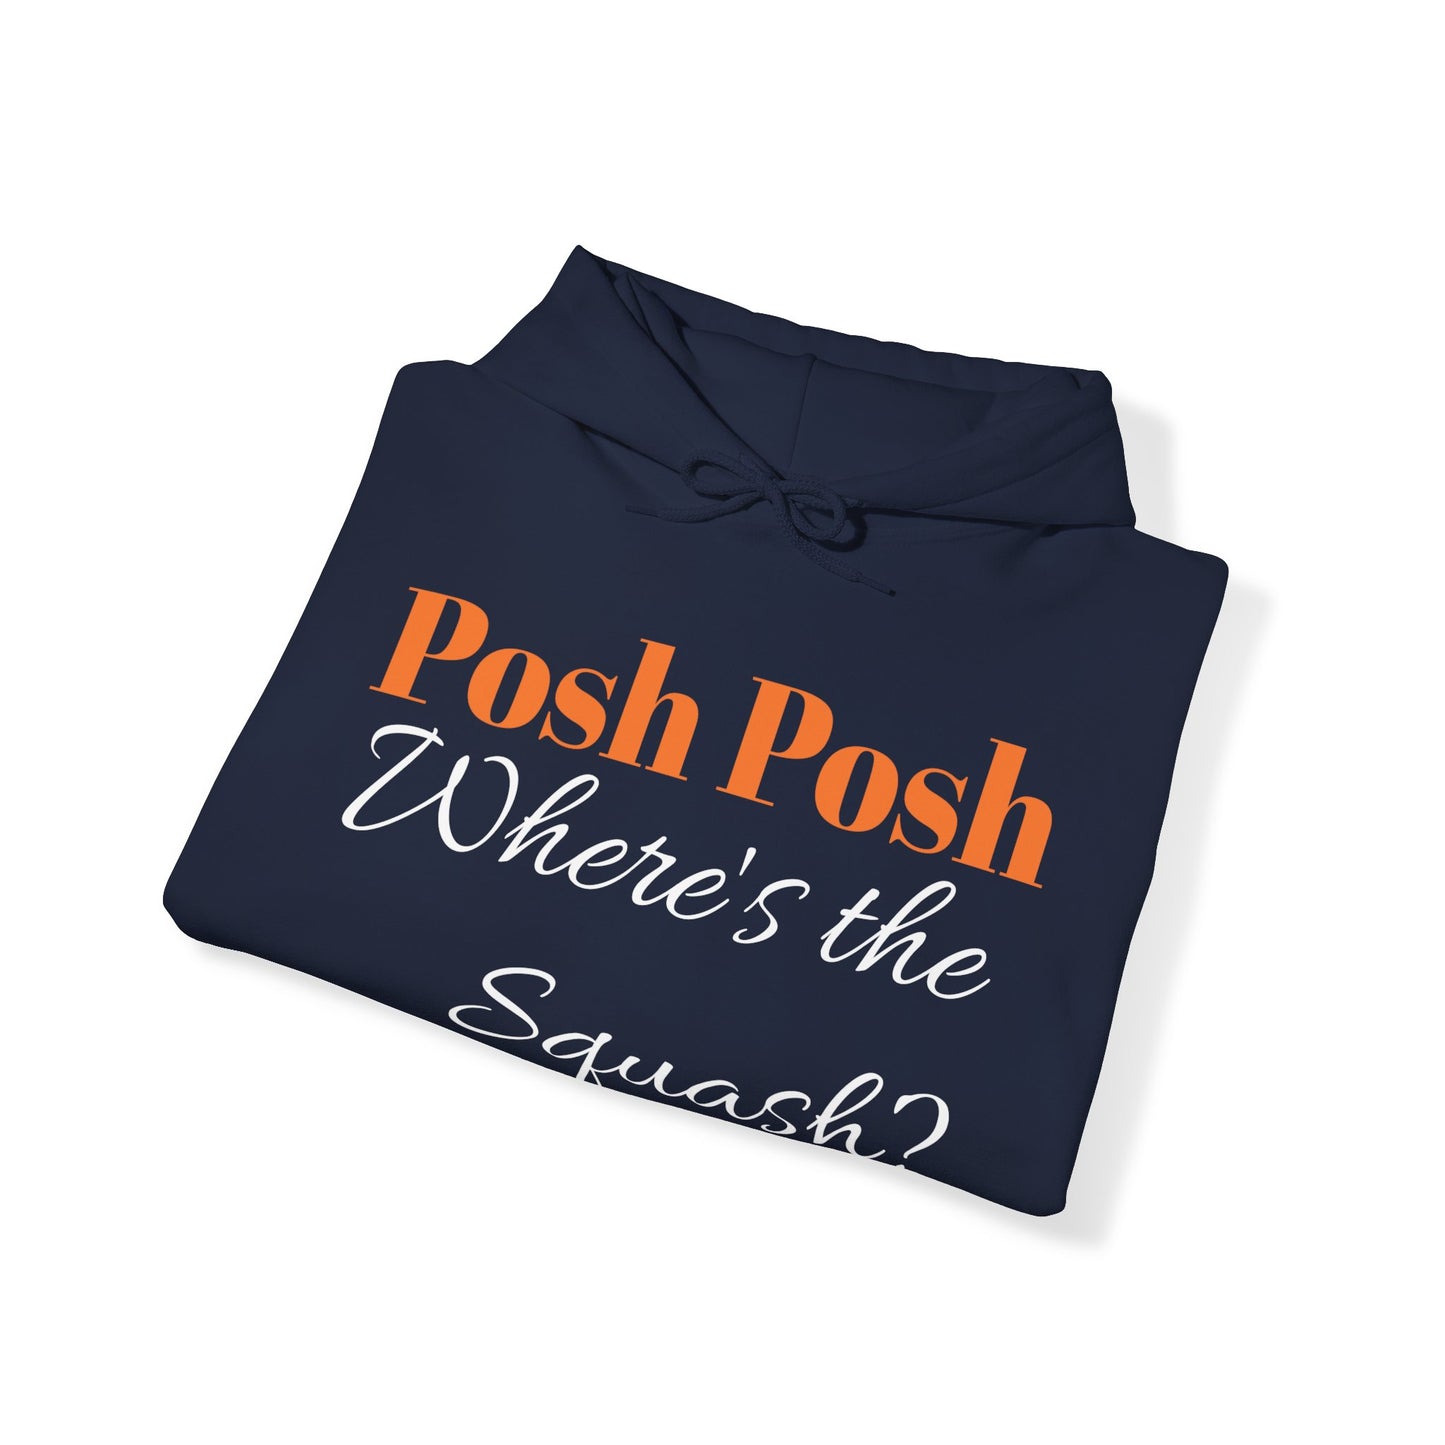 Chrisism No. 3 Hoodie - Posh Posh, Where's the Squash?